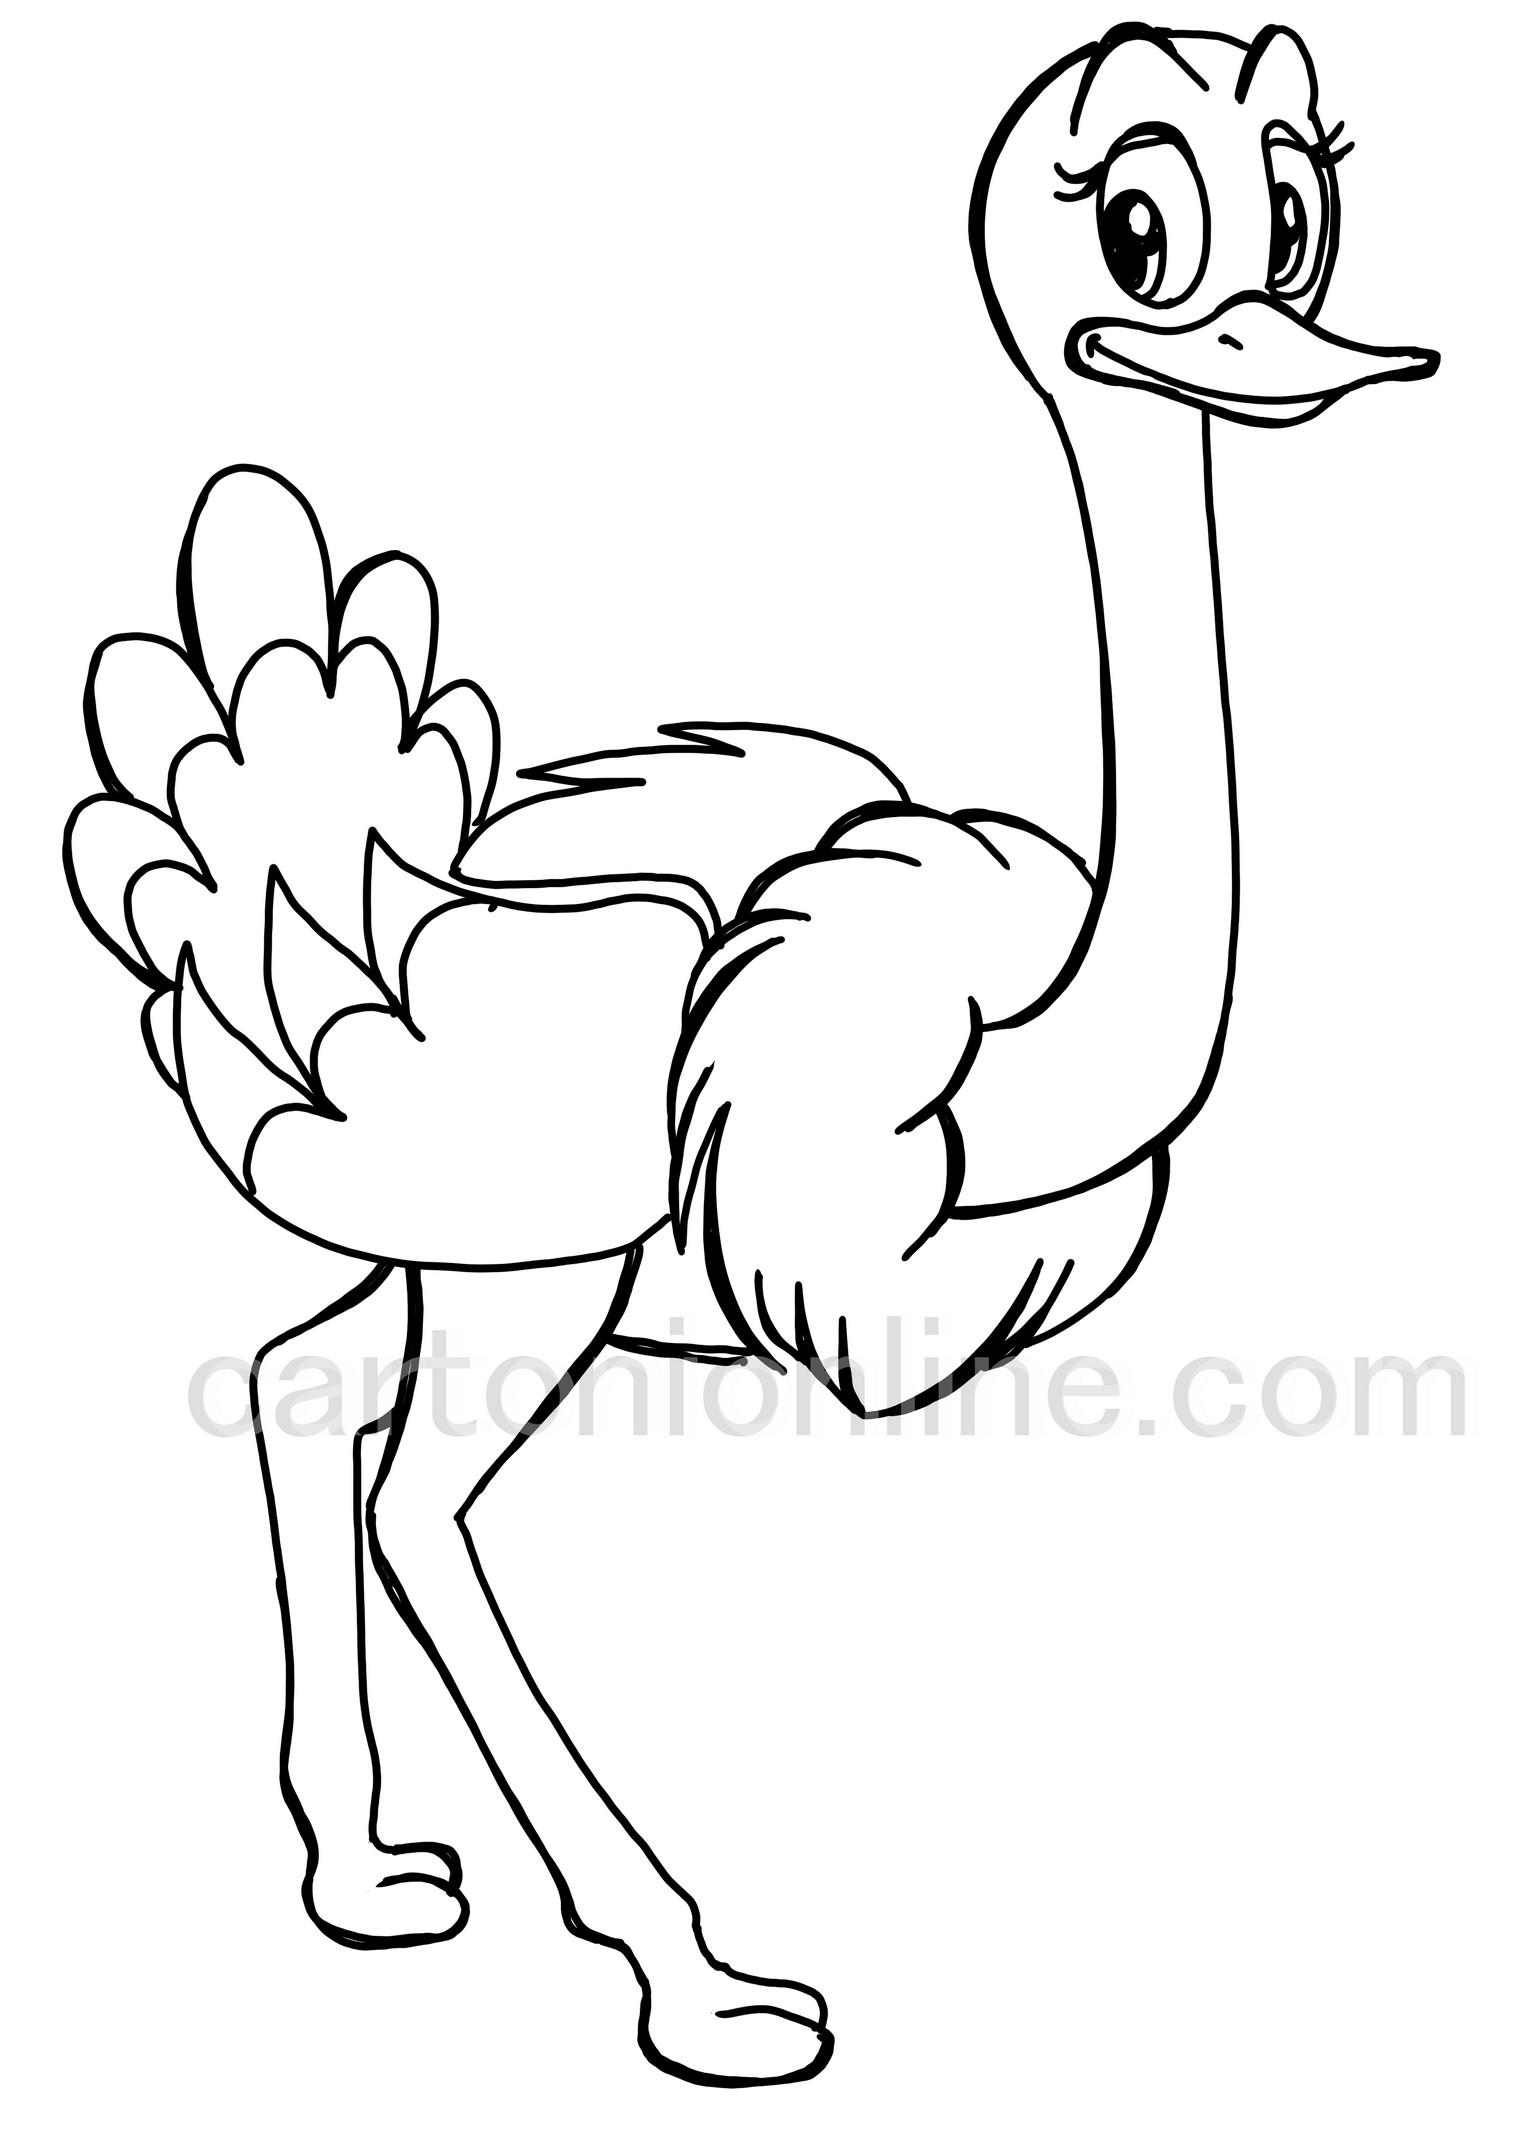 Dibujo de avestruz realista para colorear